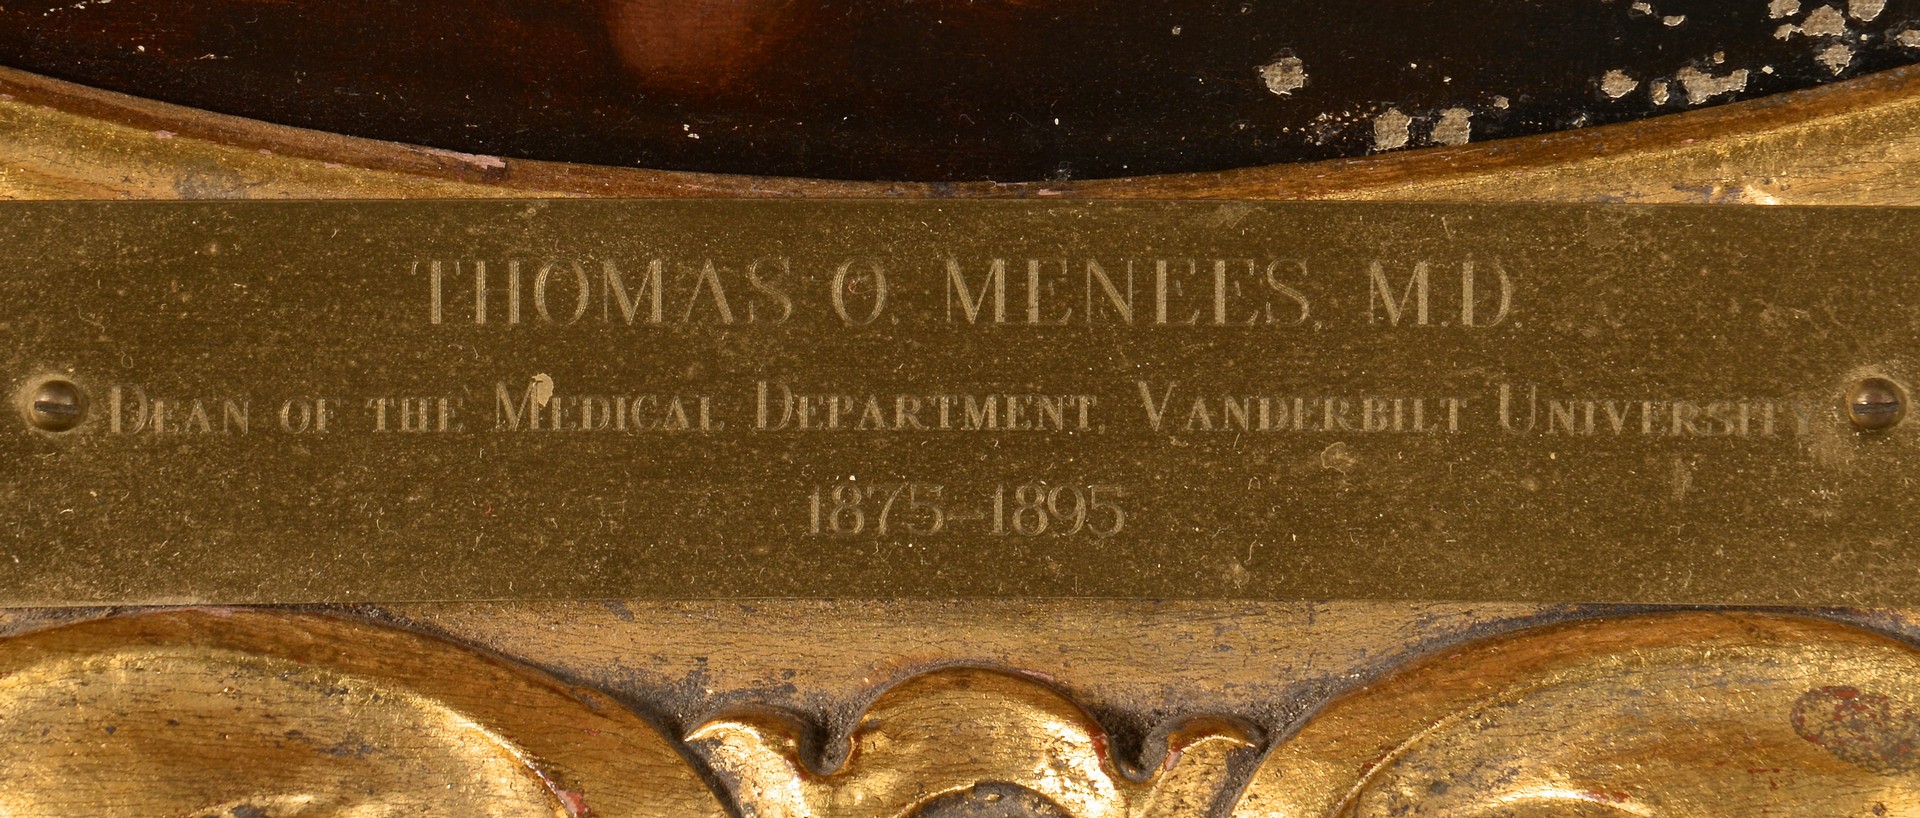 Lot 695: Oil on Board Portrait of Dr. Menees, MD